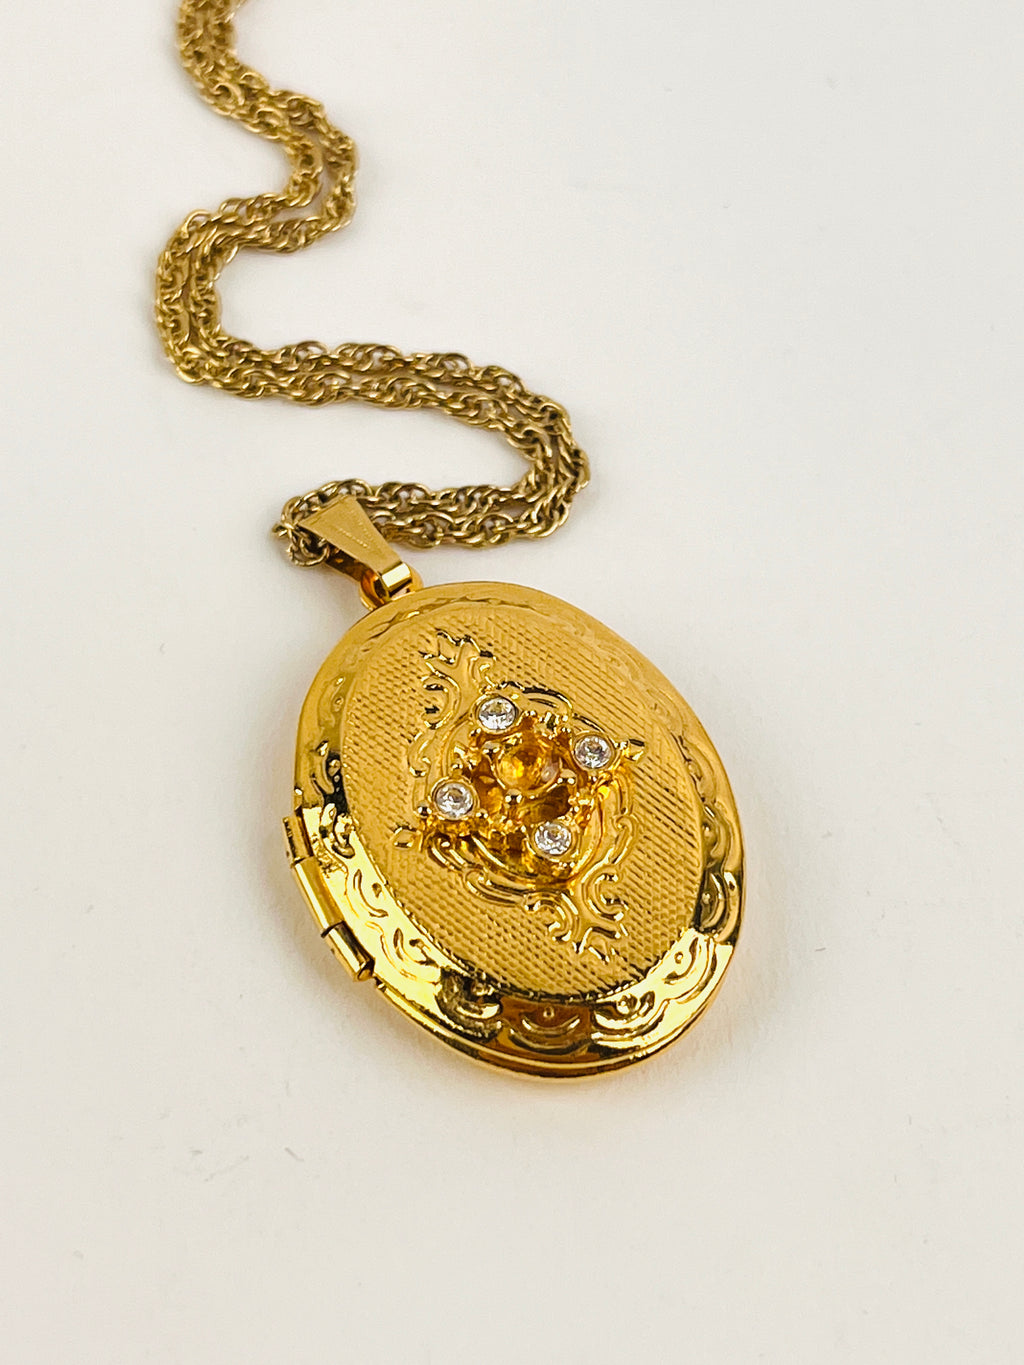 Vintage Locket Necklace